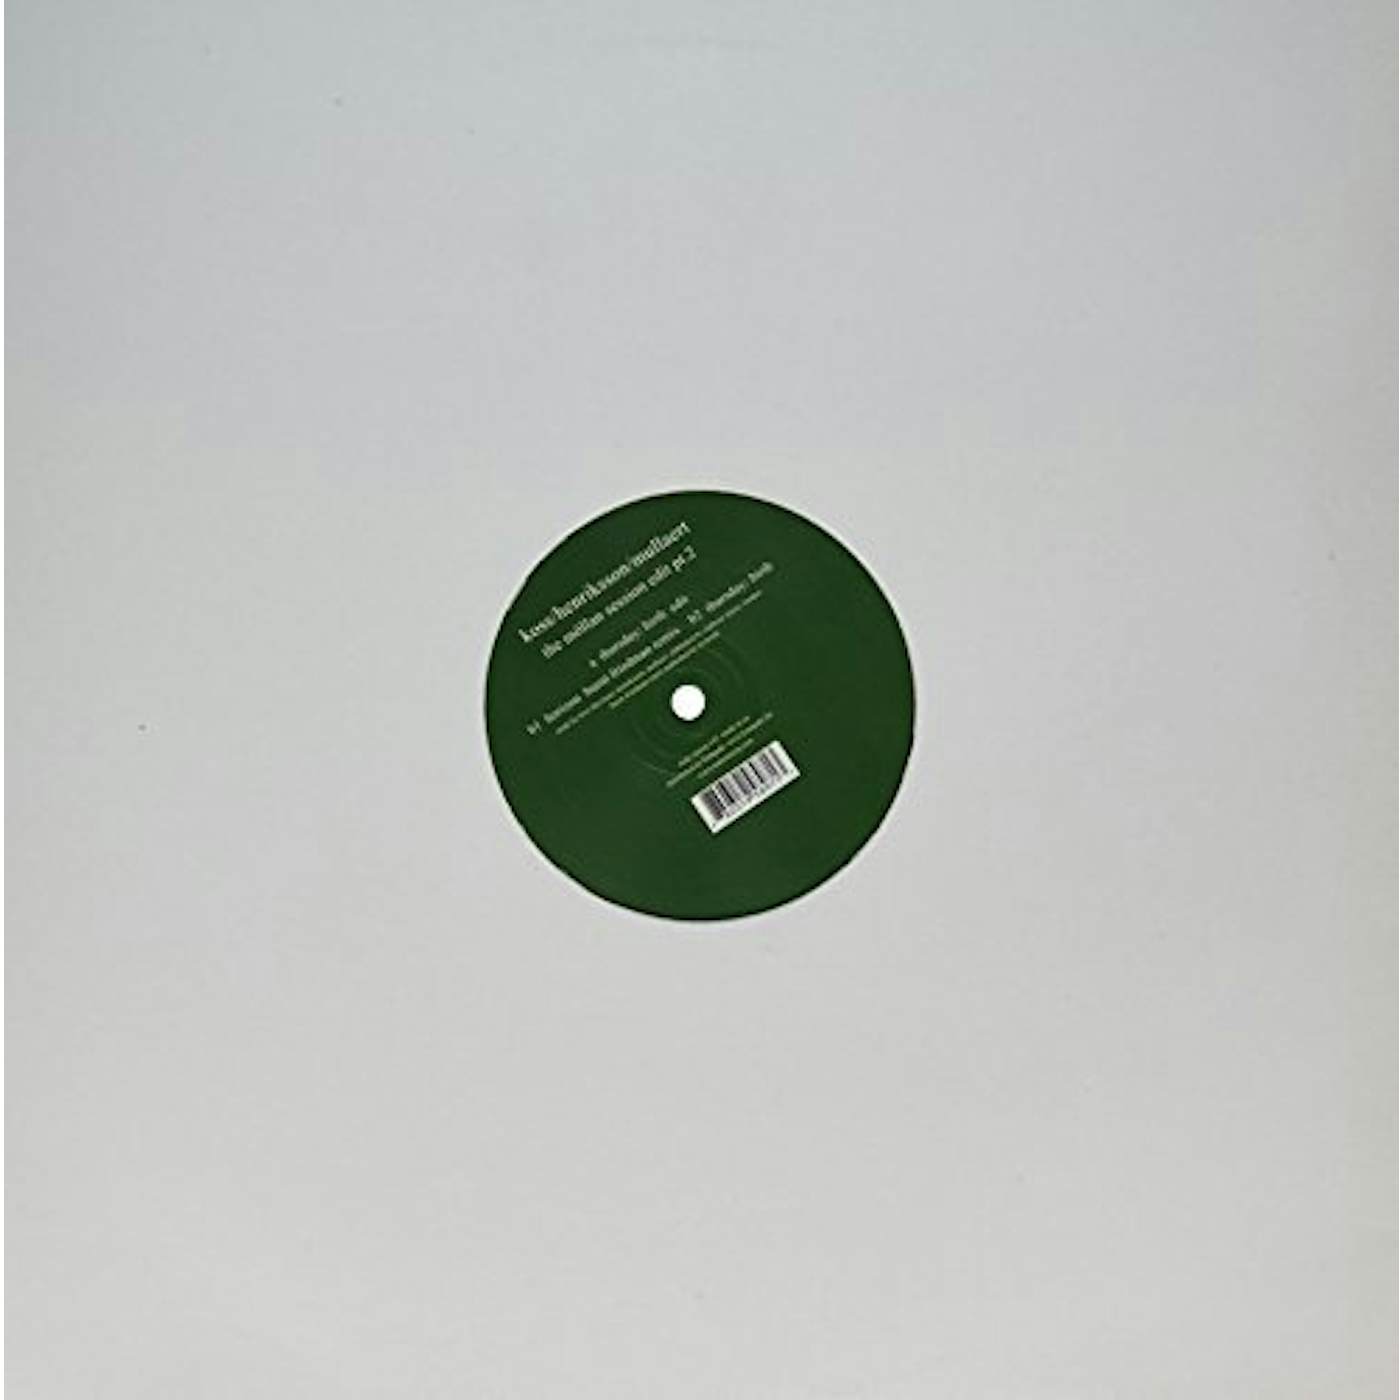 Koss / Henriksson / Mullaert MOLLAN SESSION EDIT PT. 2 Vinyl Record